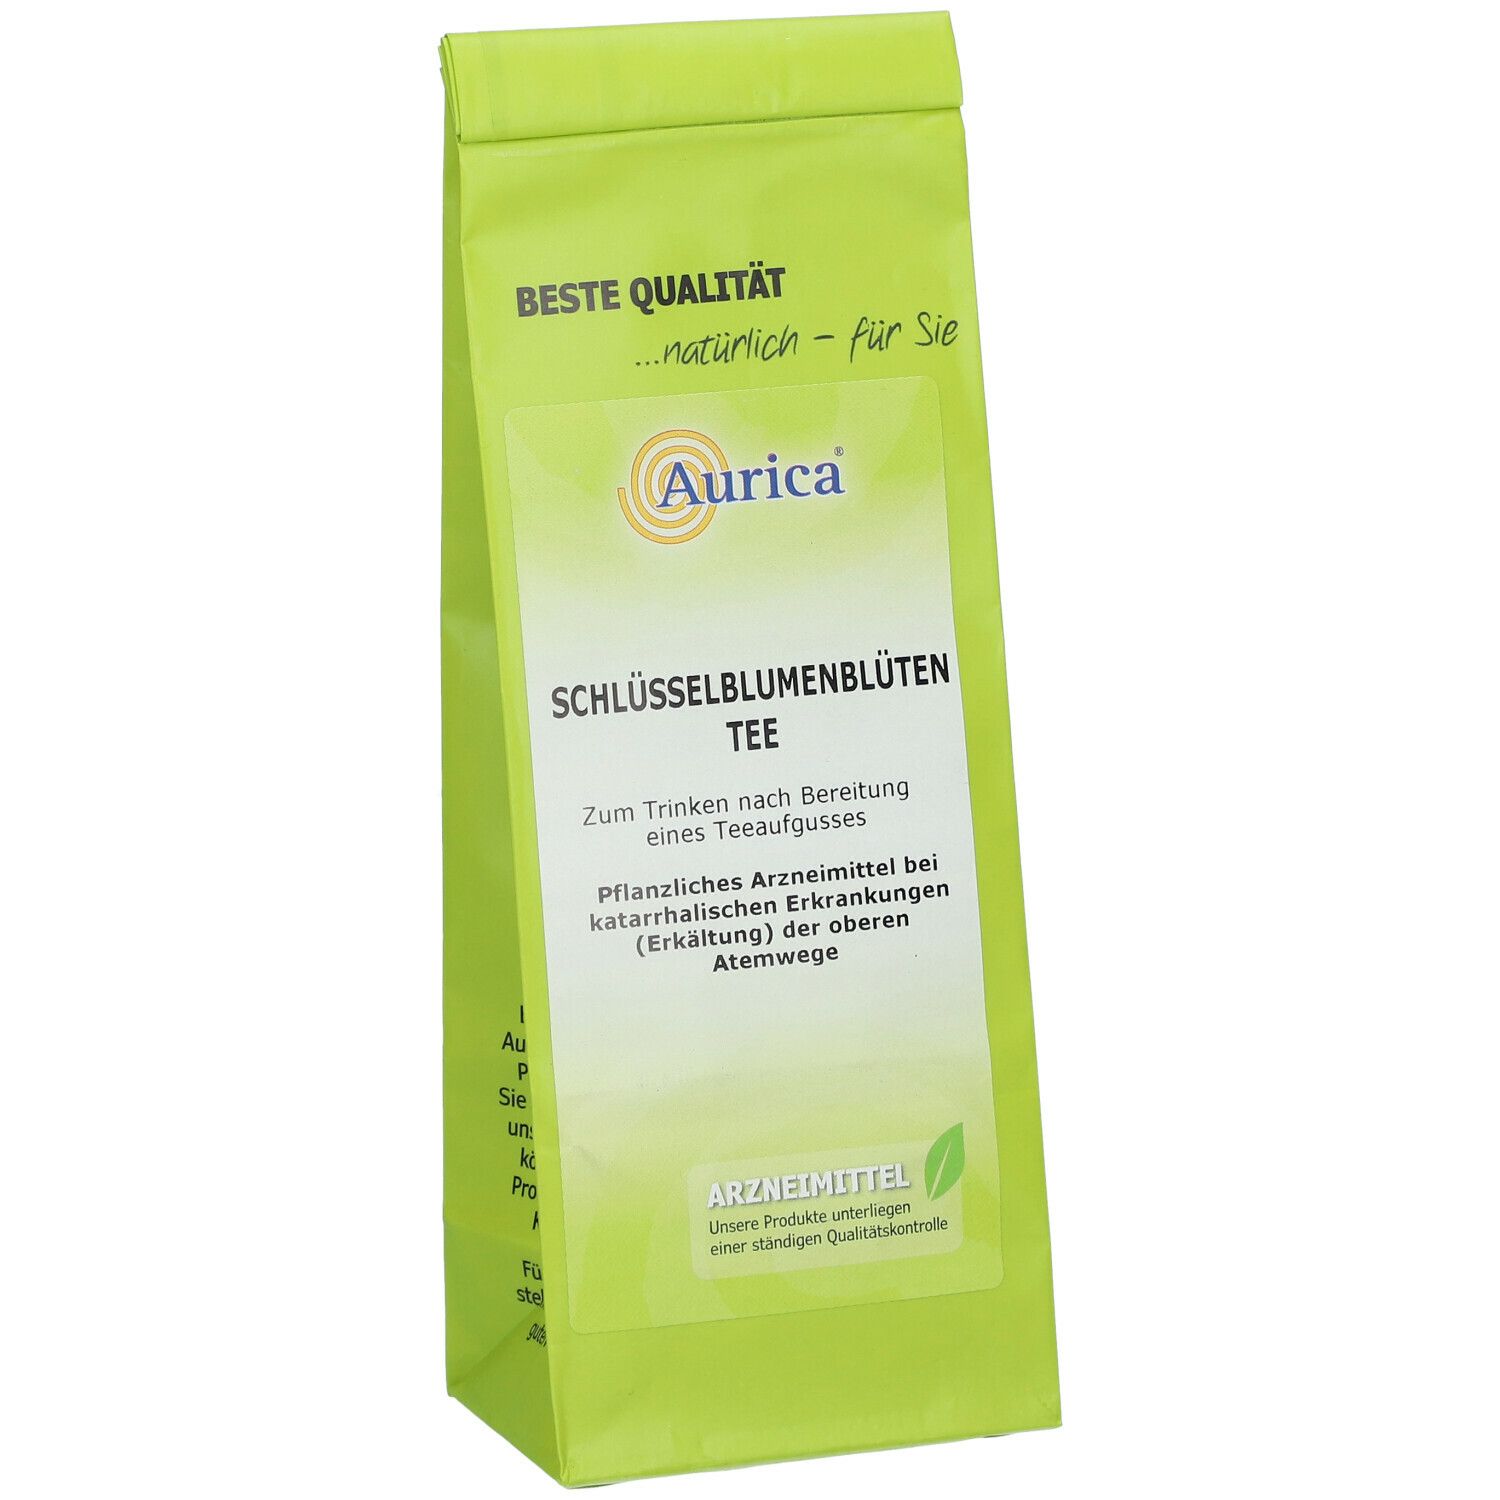 Aurica® Schlüsselblumenblüten Tee